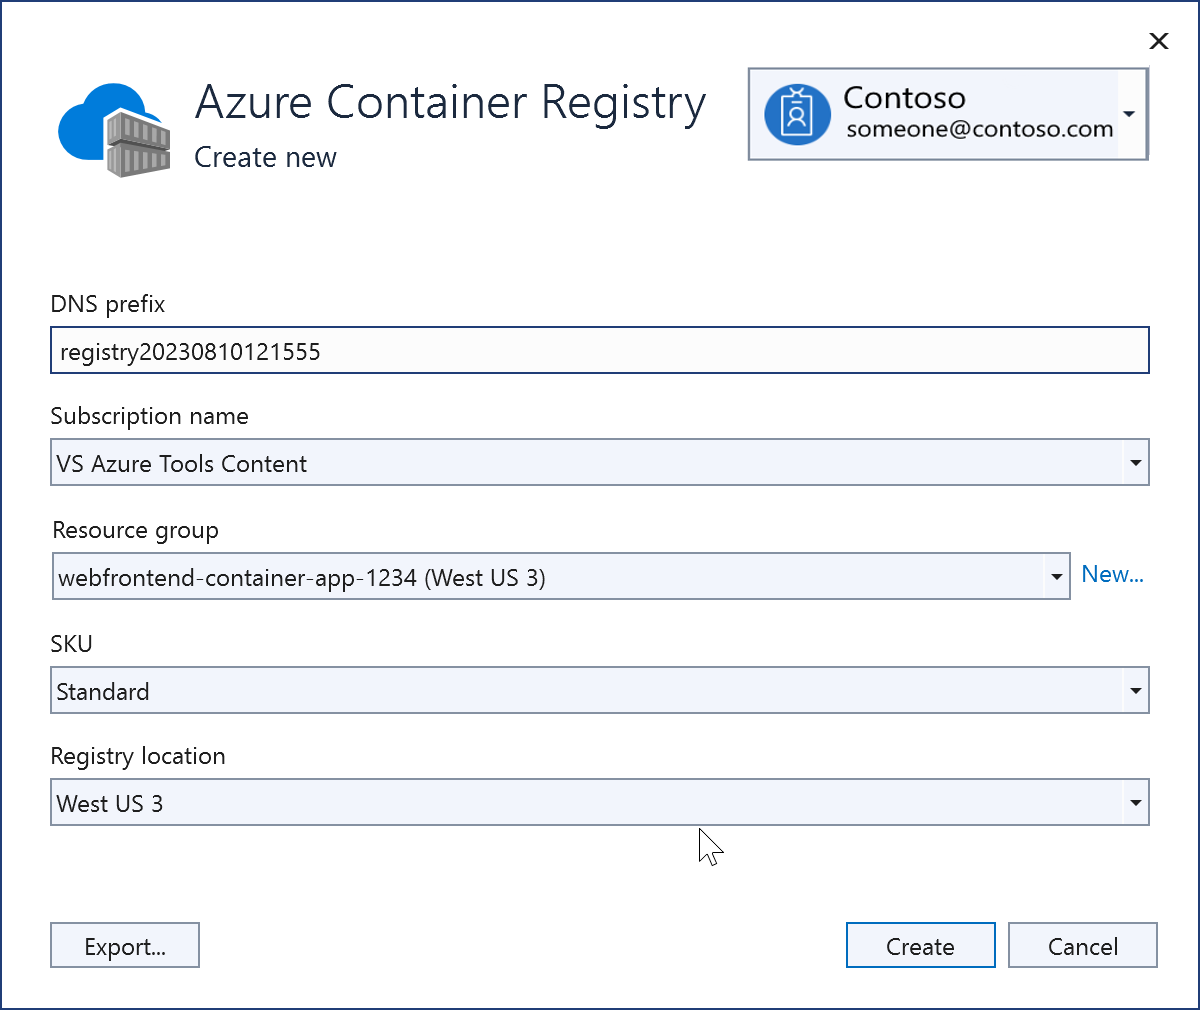 Снимок экрана: новый реестр контейнеров Azure, который только что был создан.